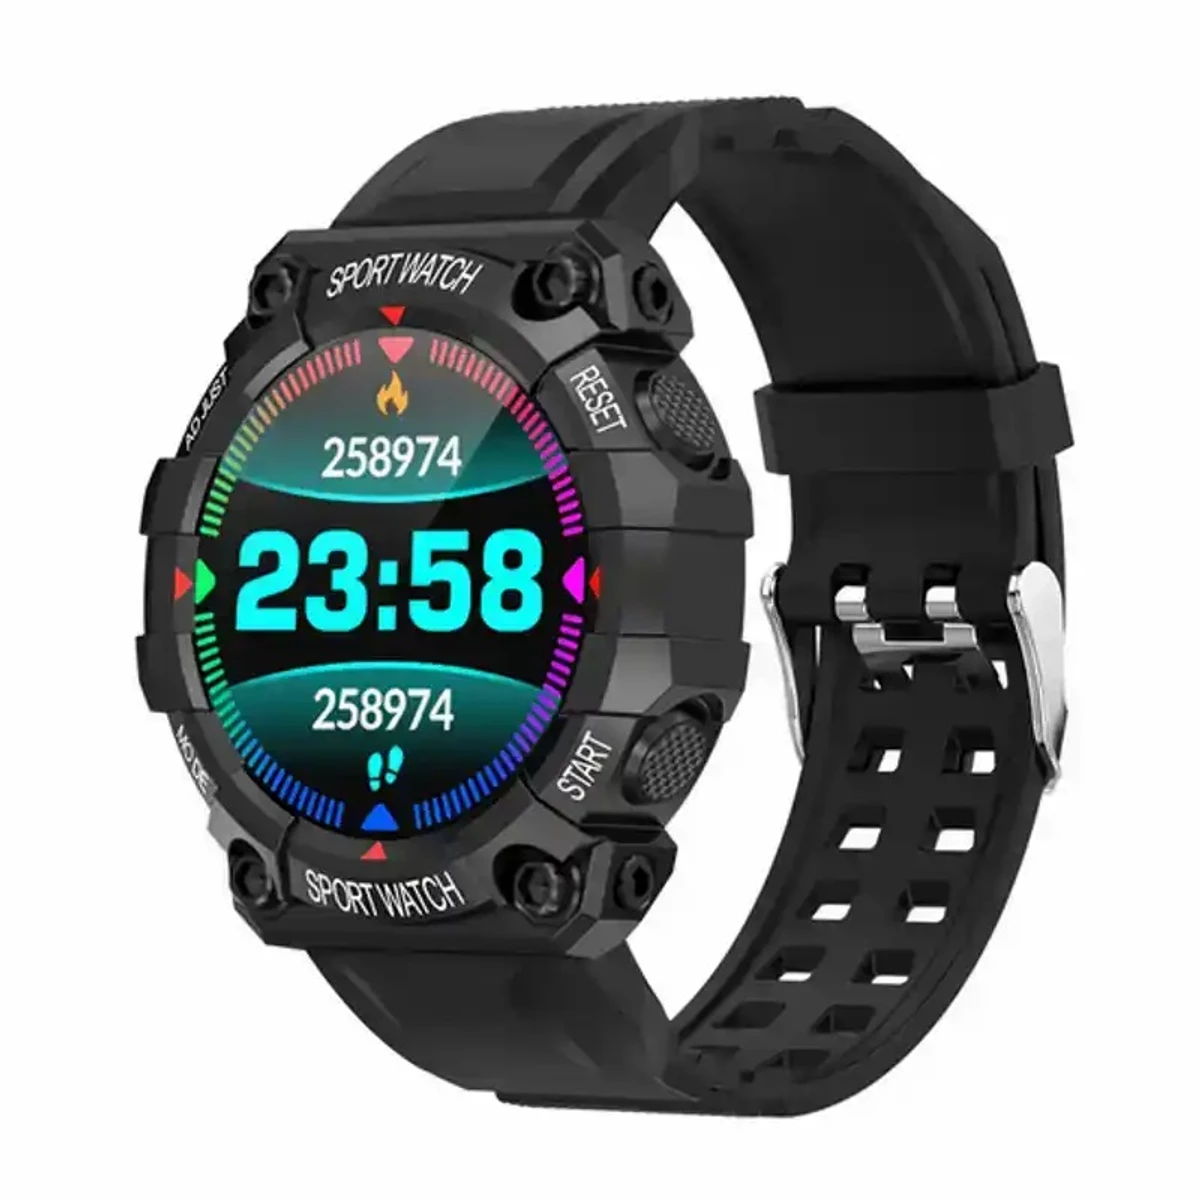 Mixi Pro X10 Smart Watch